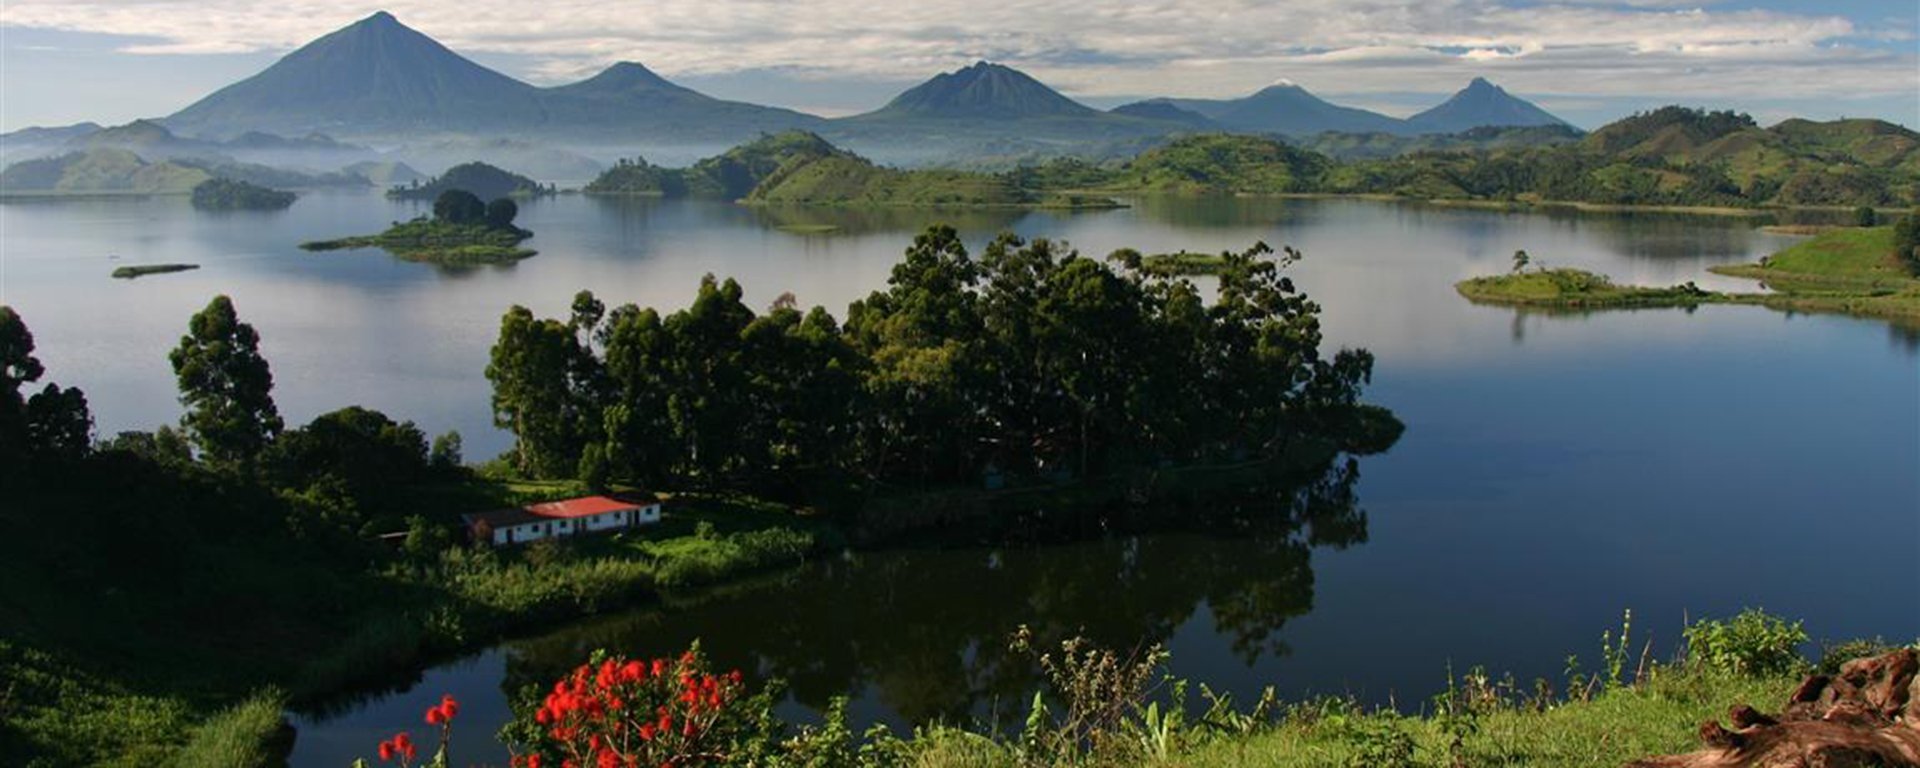 Озеро Виктория Уганда фото